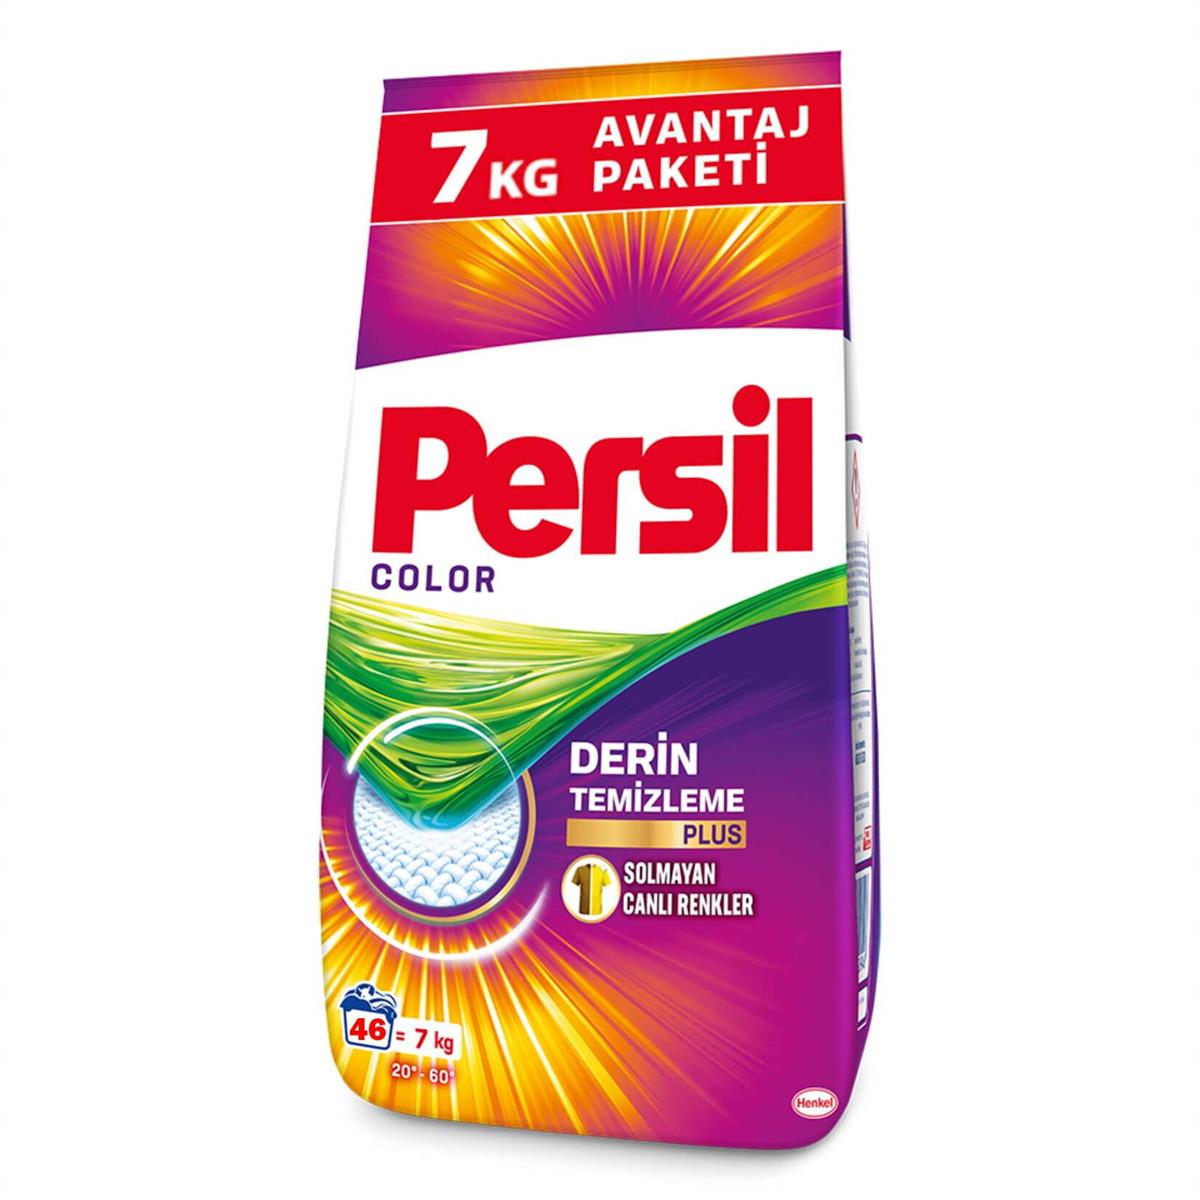 Persil Color 7Kg Derin Temizleme Plus Solmayan Canlı Renkler